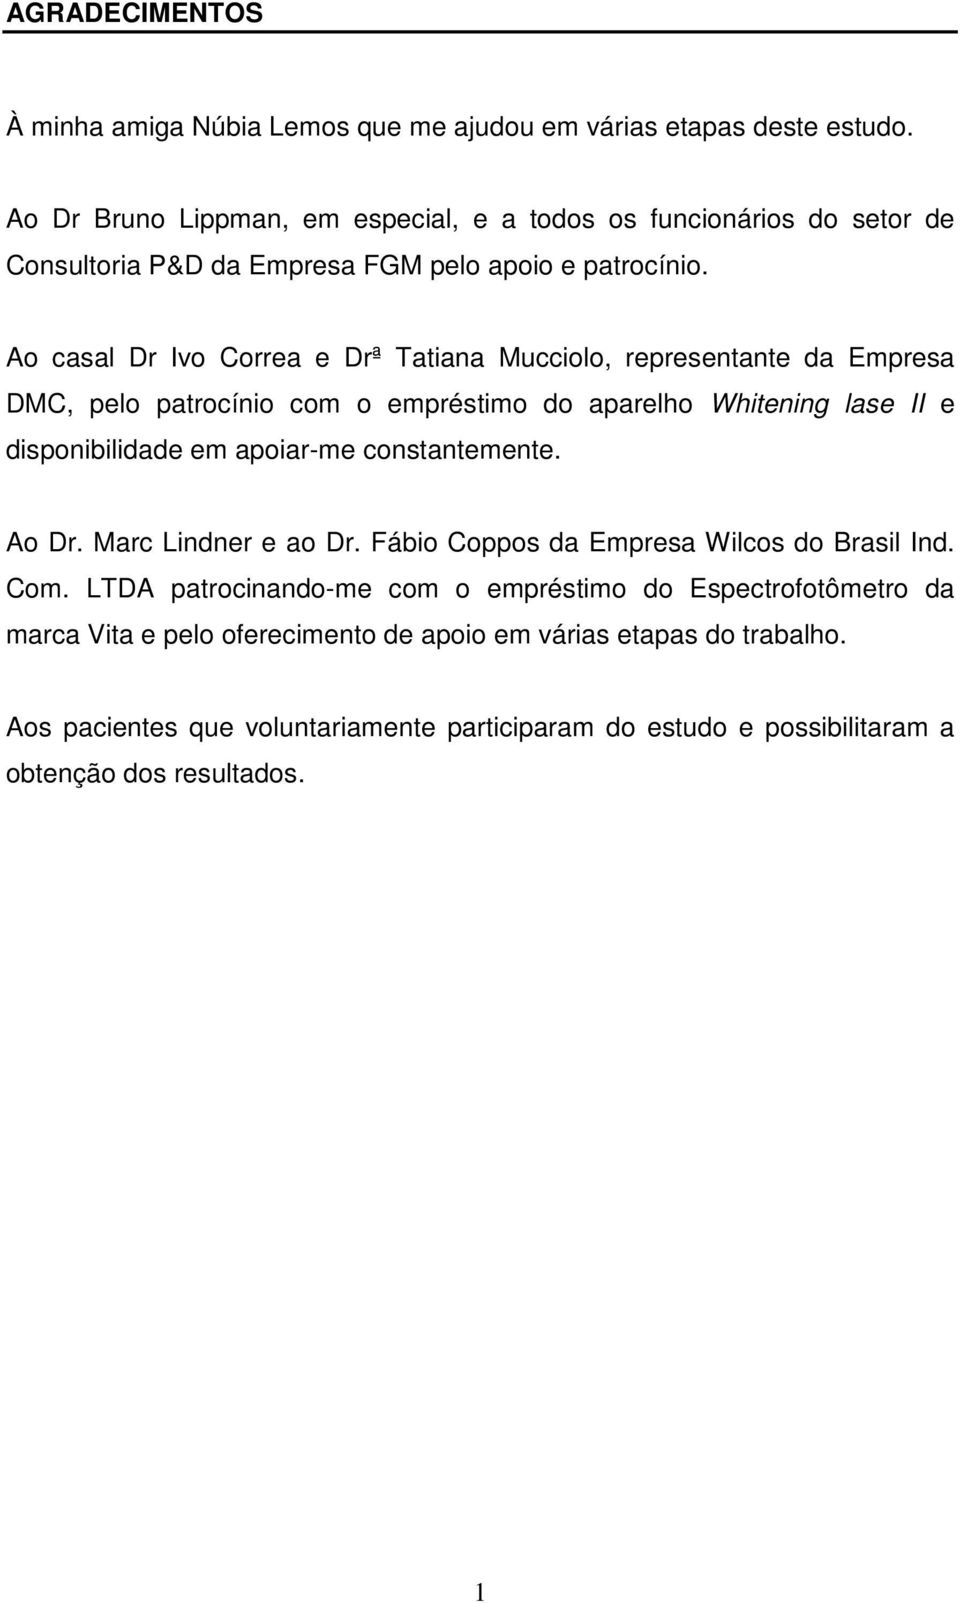 Ao casal Dr Ivo Correa e Drª Tatiana Mucciolo, representante da Empresa DMC, pelo patrocínio com o empréstimo do aparelho Whitening lase II e disponibilidade em apoiar-me